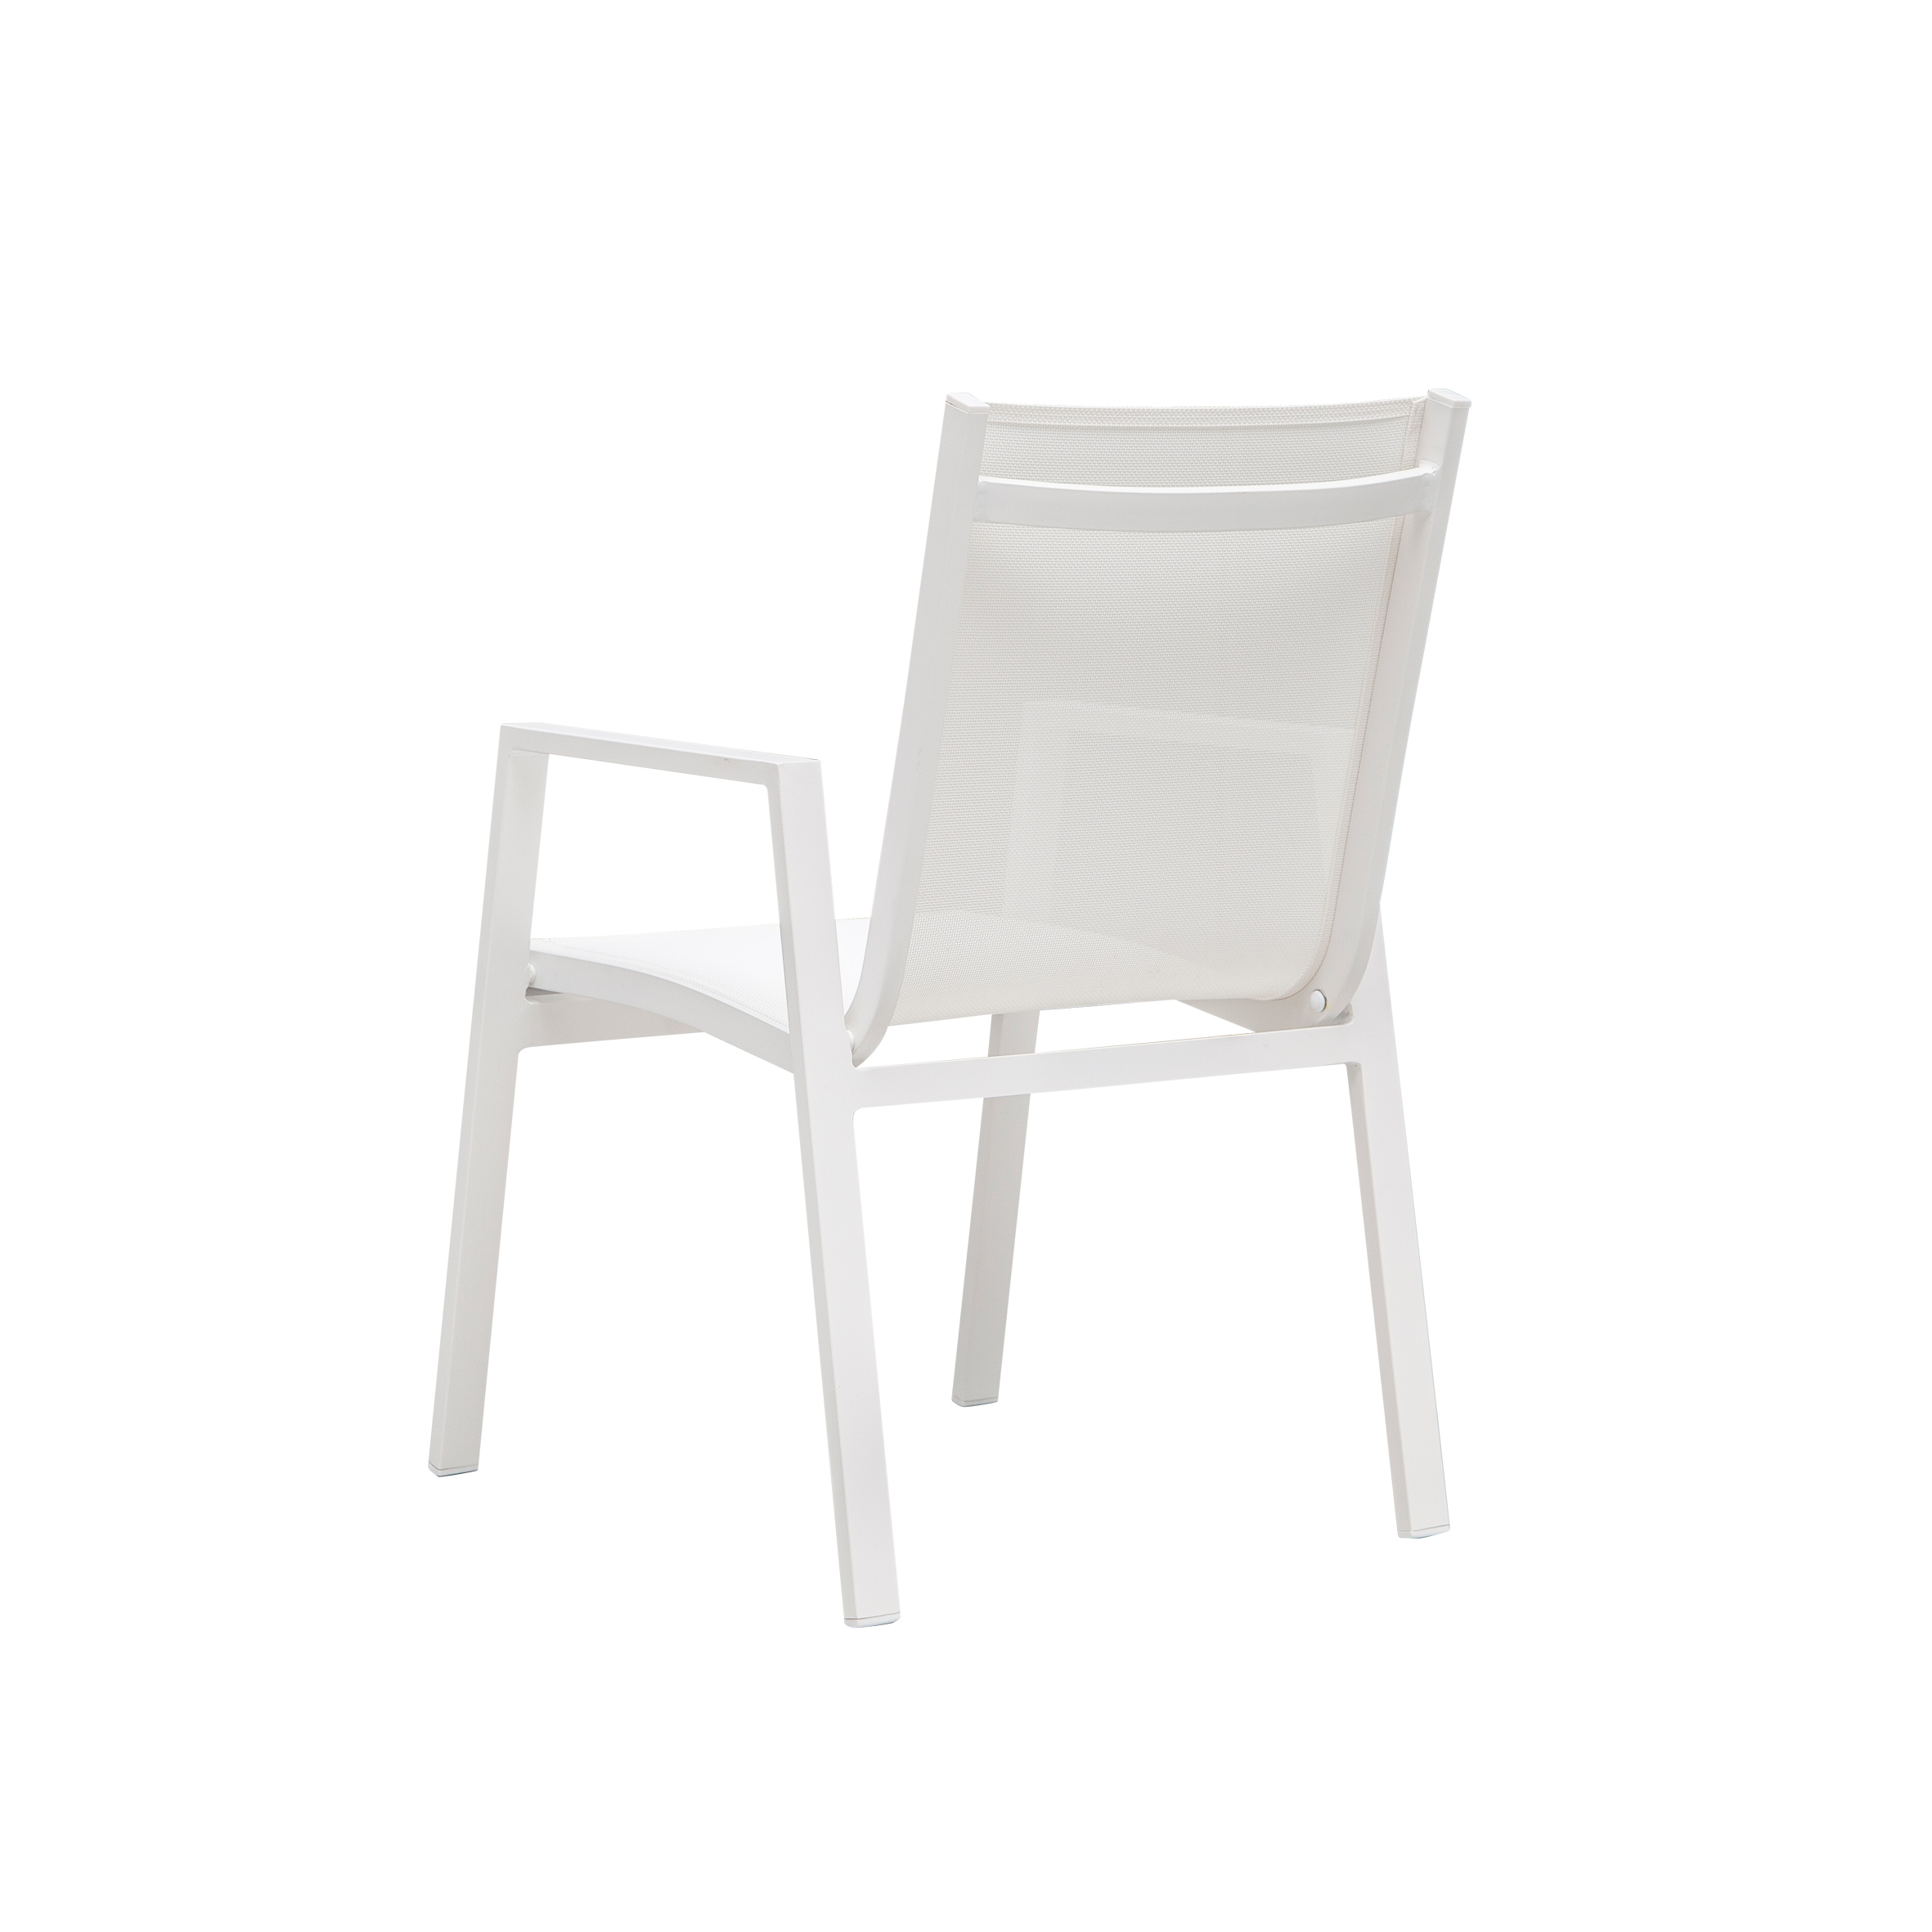 Kar beyazı tekstil yemek sandalyesi S4